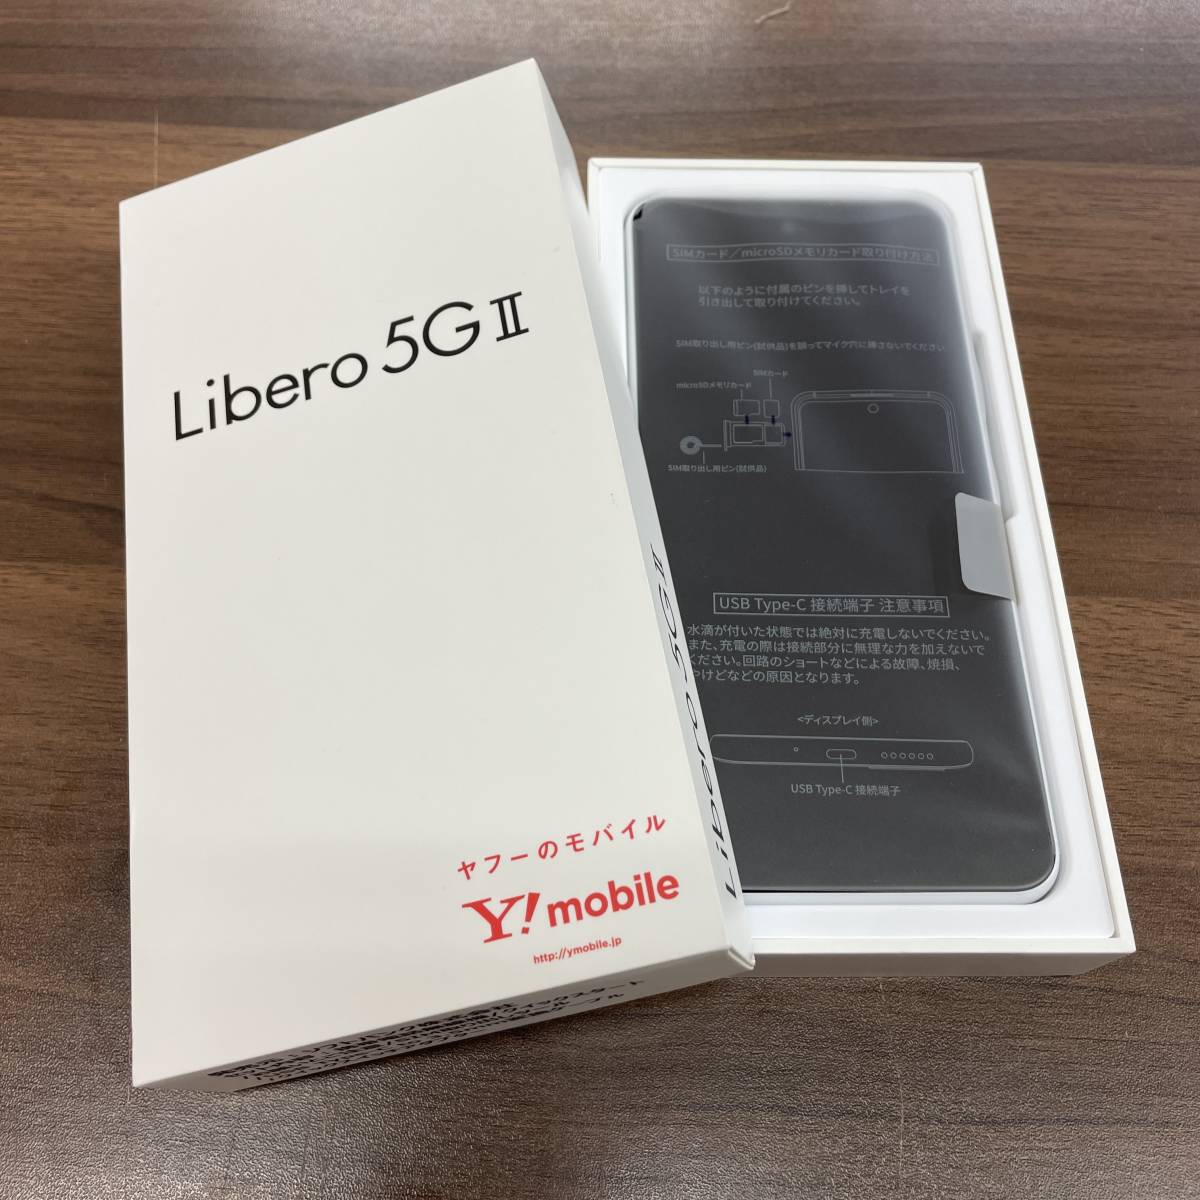 【新品未使用品】Libero 5G Ⅱ/ホワイト/利用制限○/SIMフリーモデル/Y!Mobile版